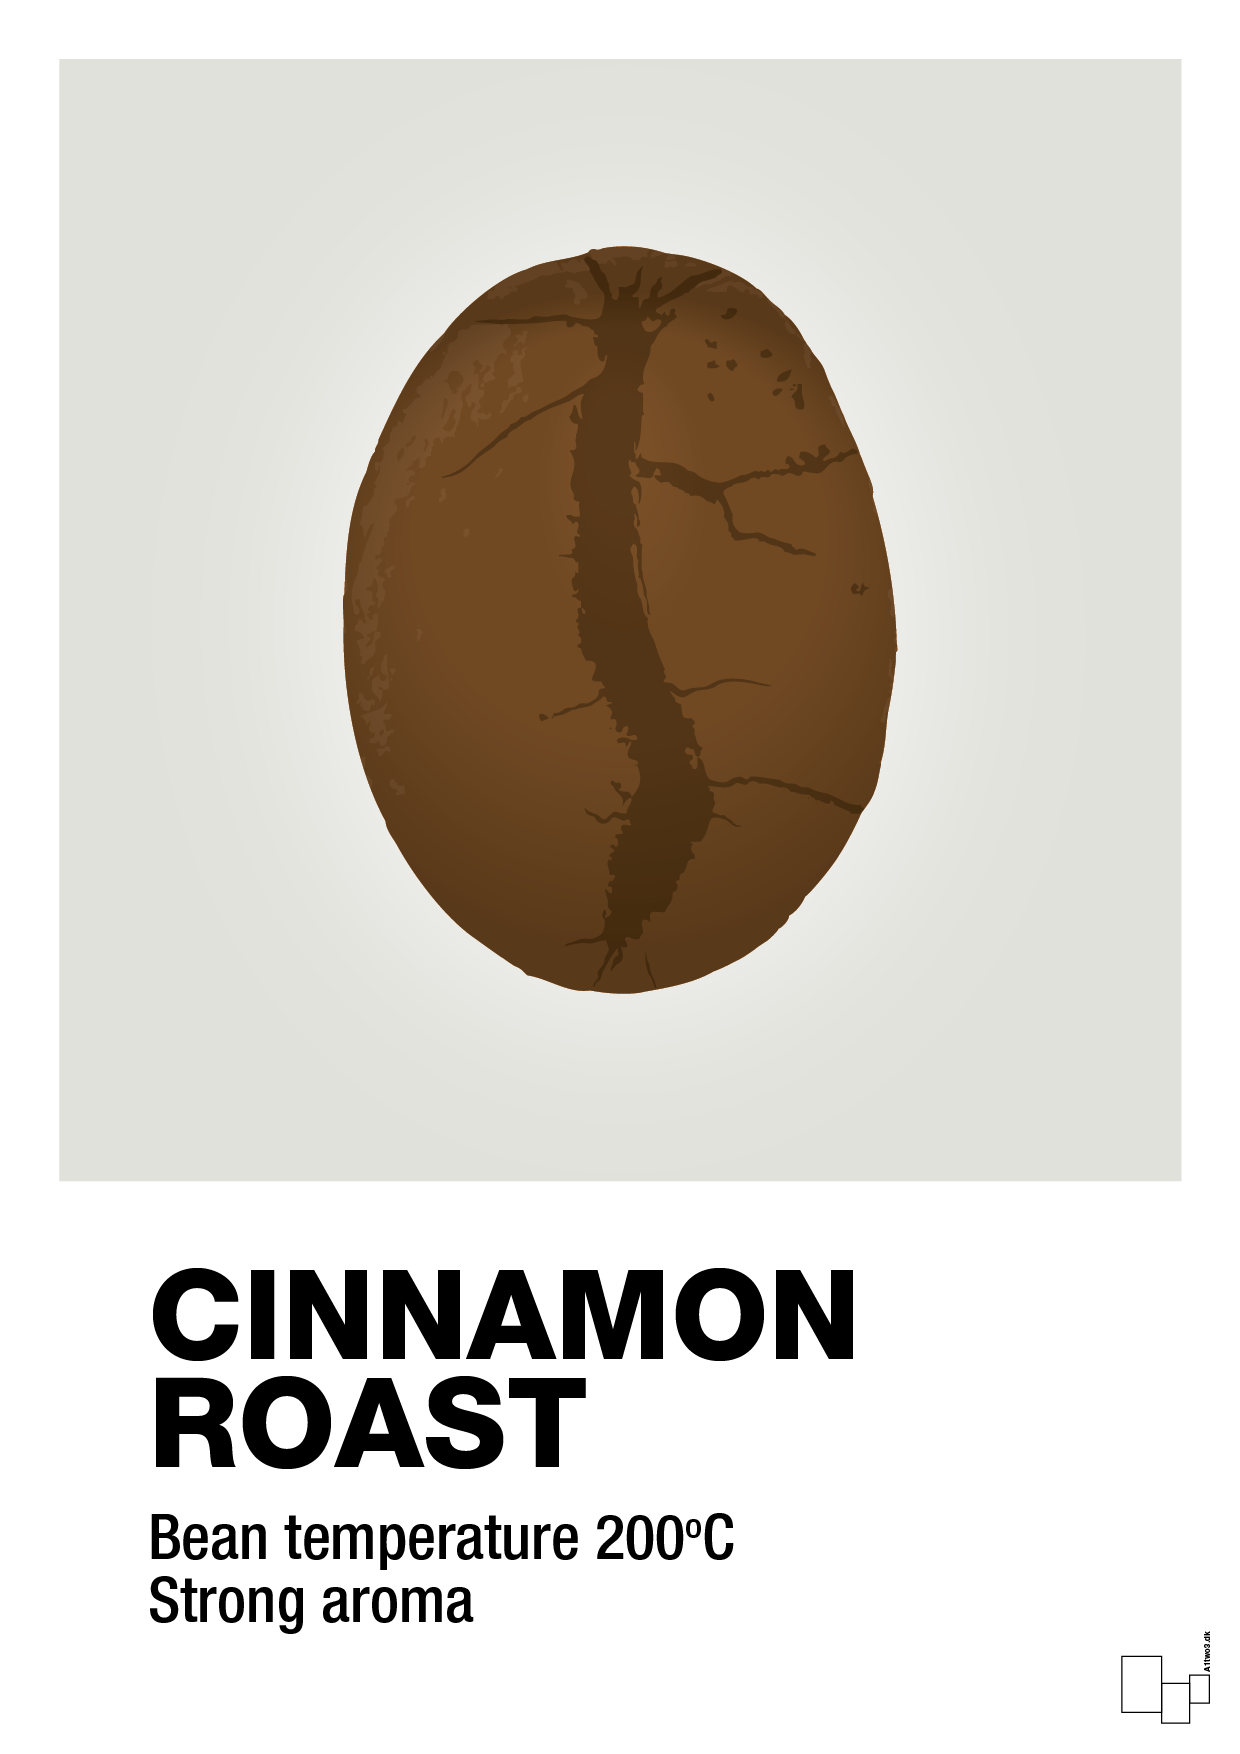 cinnamom roast - Plakat med Mad & Drikke i Painters White